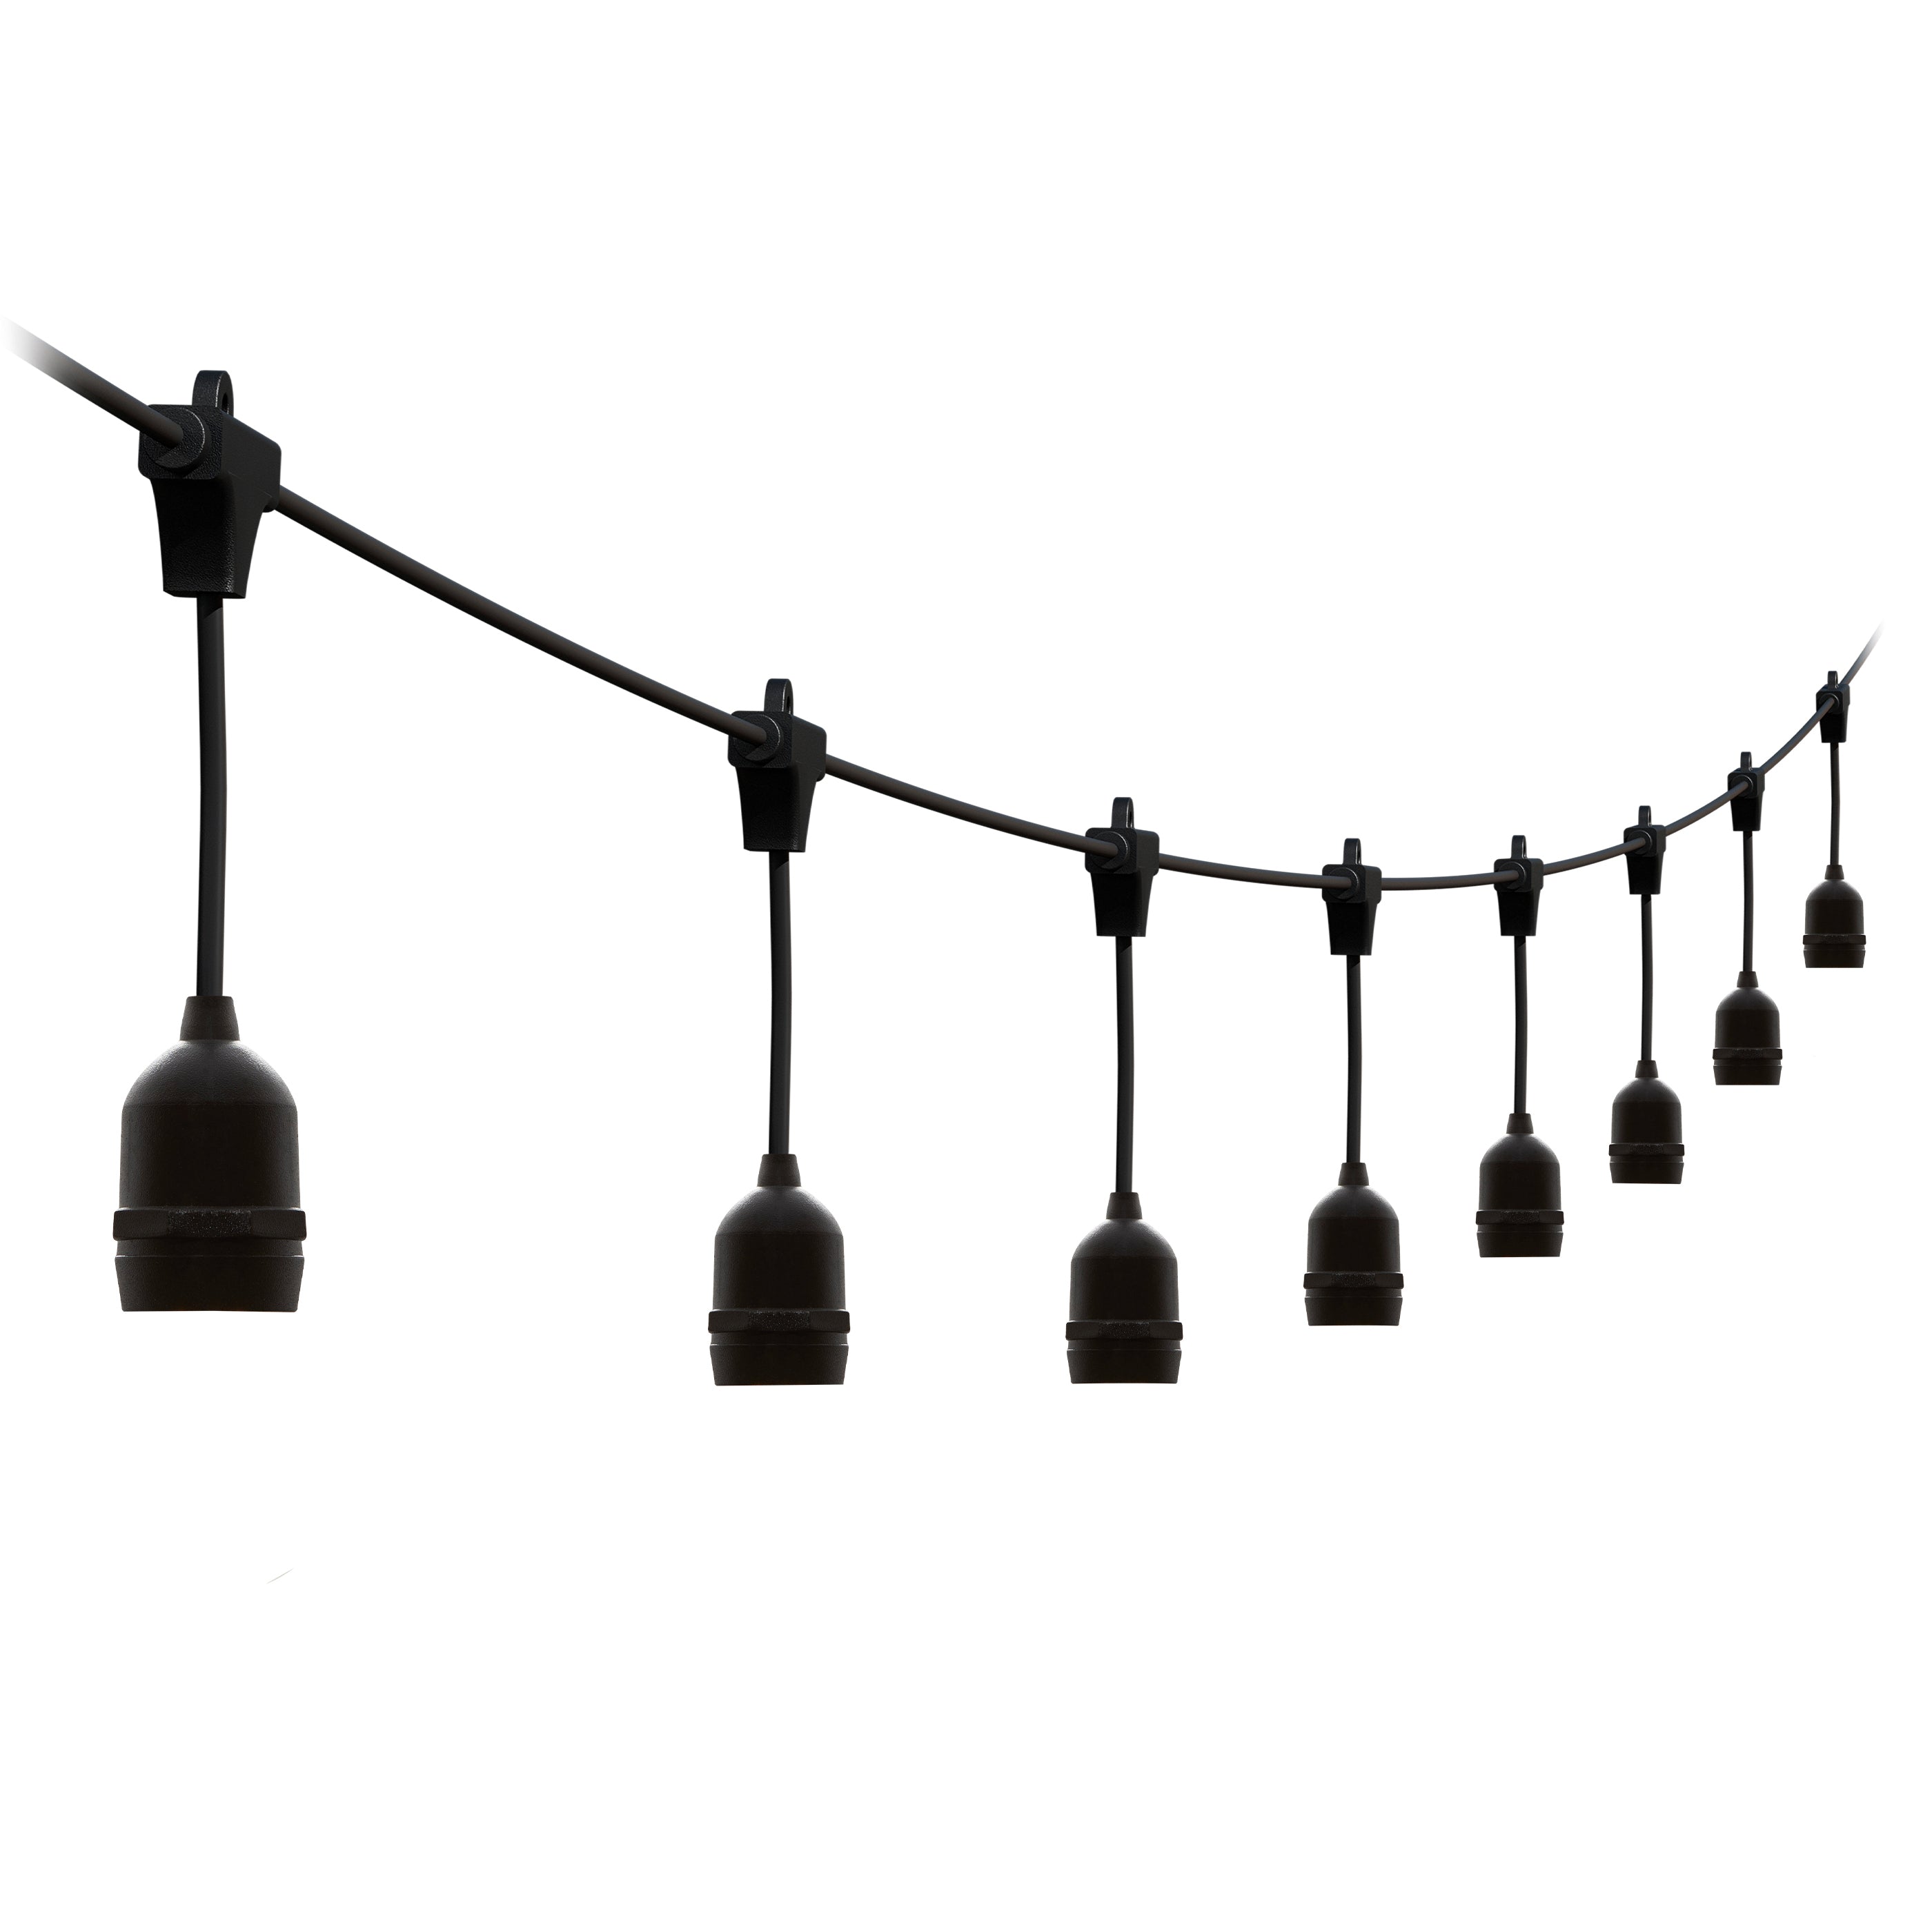 4lite Festoon Outdoor String Light E27 Screw Lamp Holders (Bulbs Not Included)